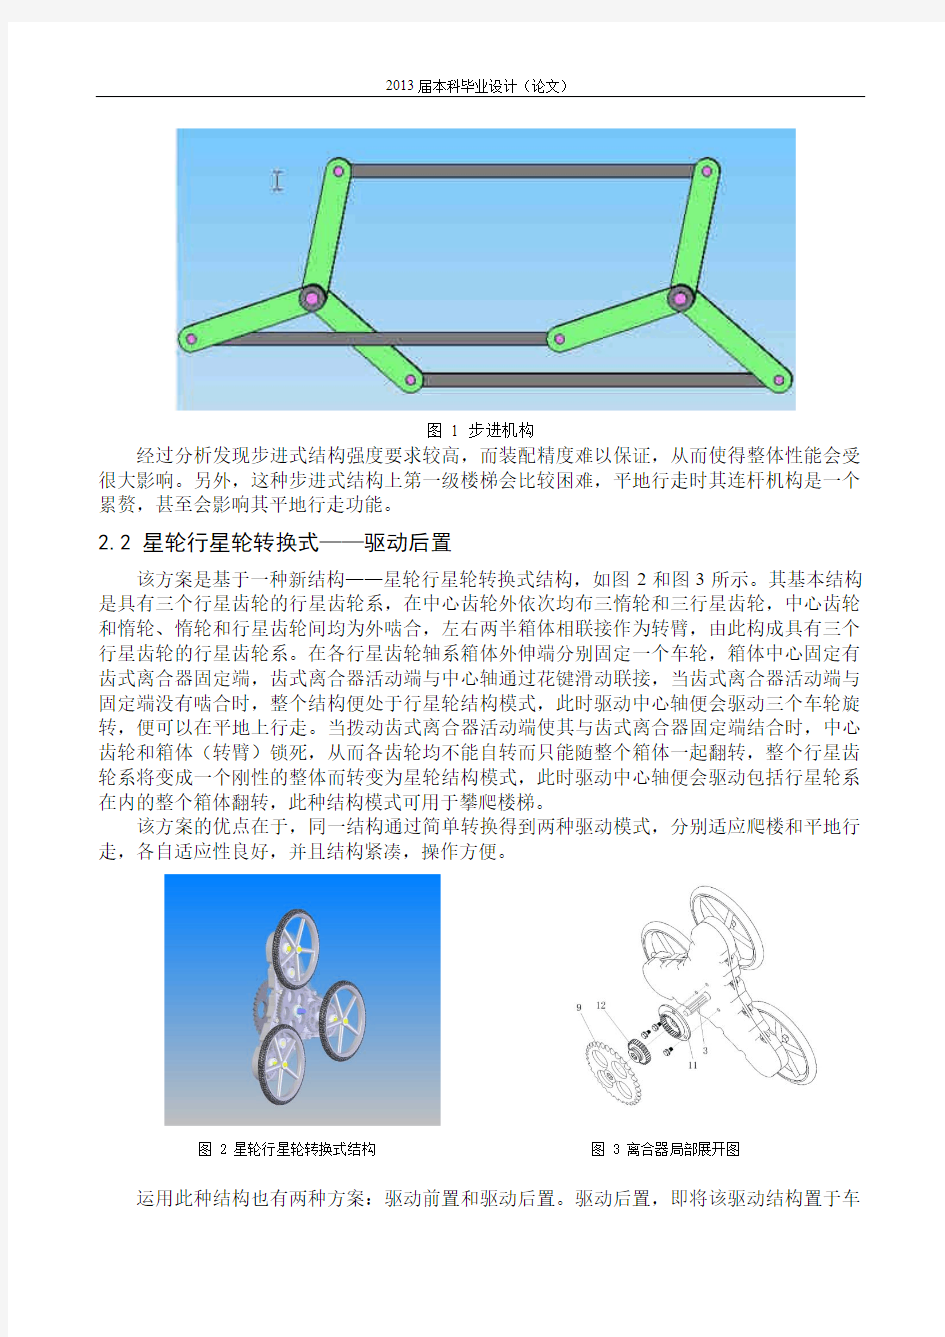 星轮行星轮转换式可爬楼轮椅设计说明书